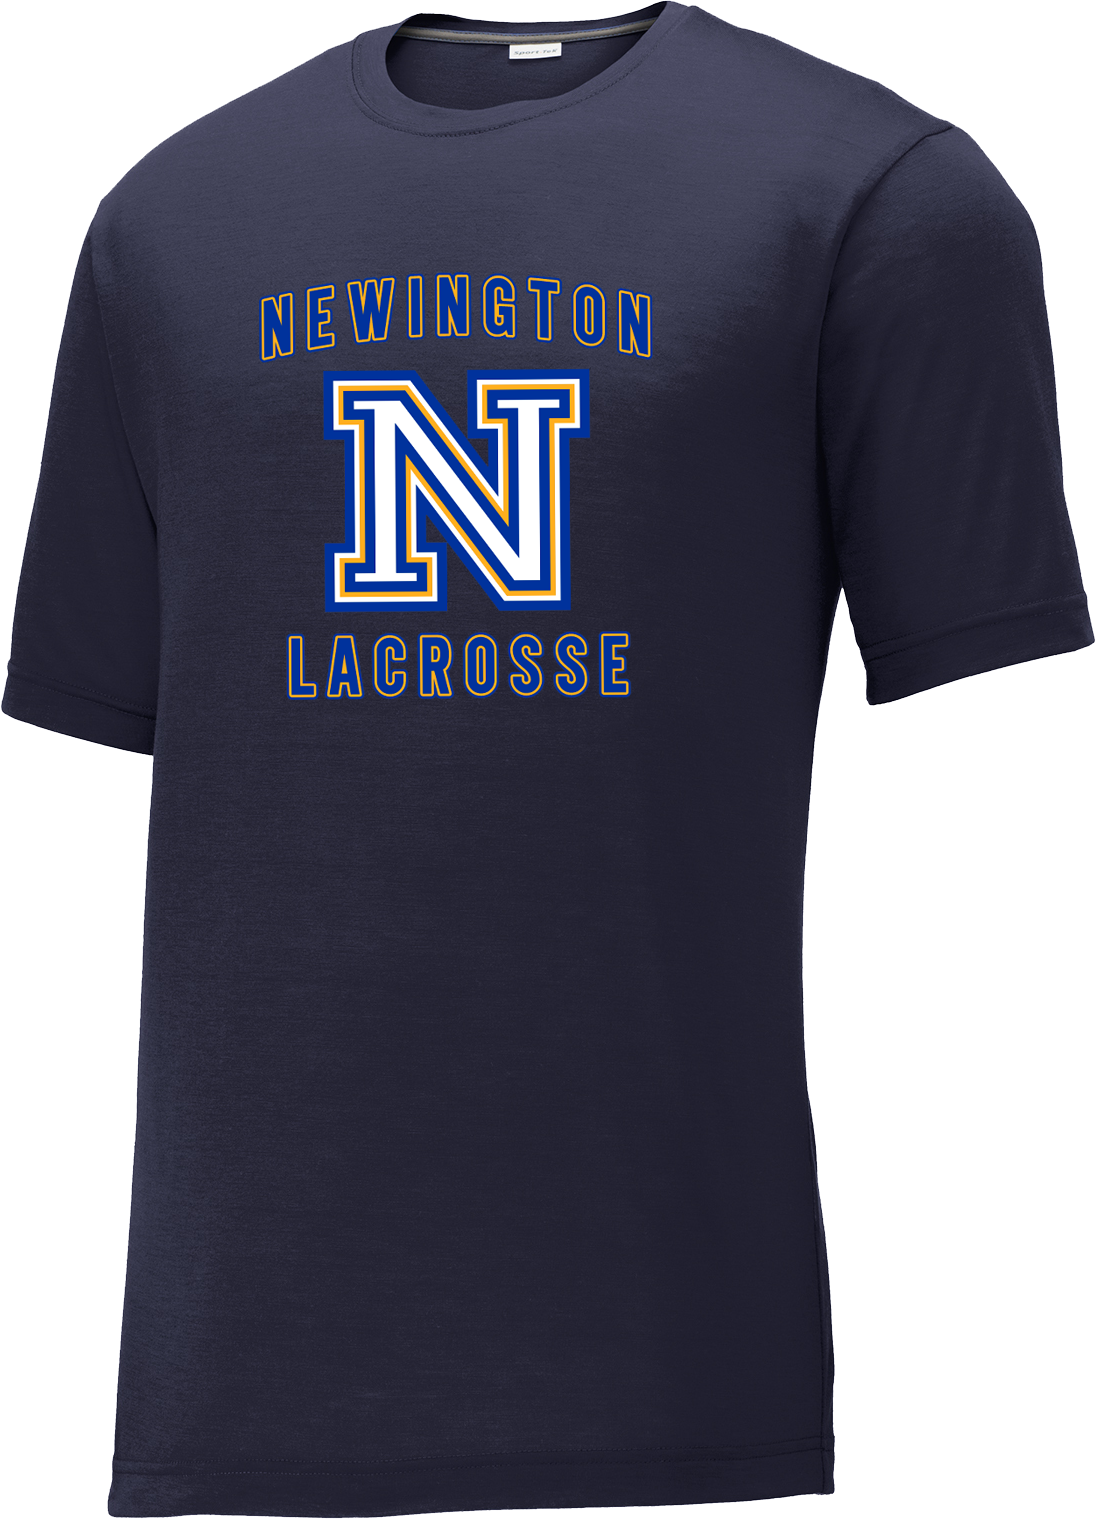 Newington Lacrosse Navy CottonTouch Performance T-Shirt